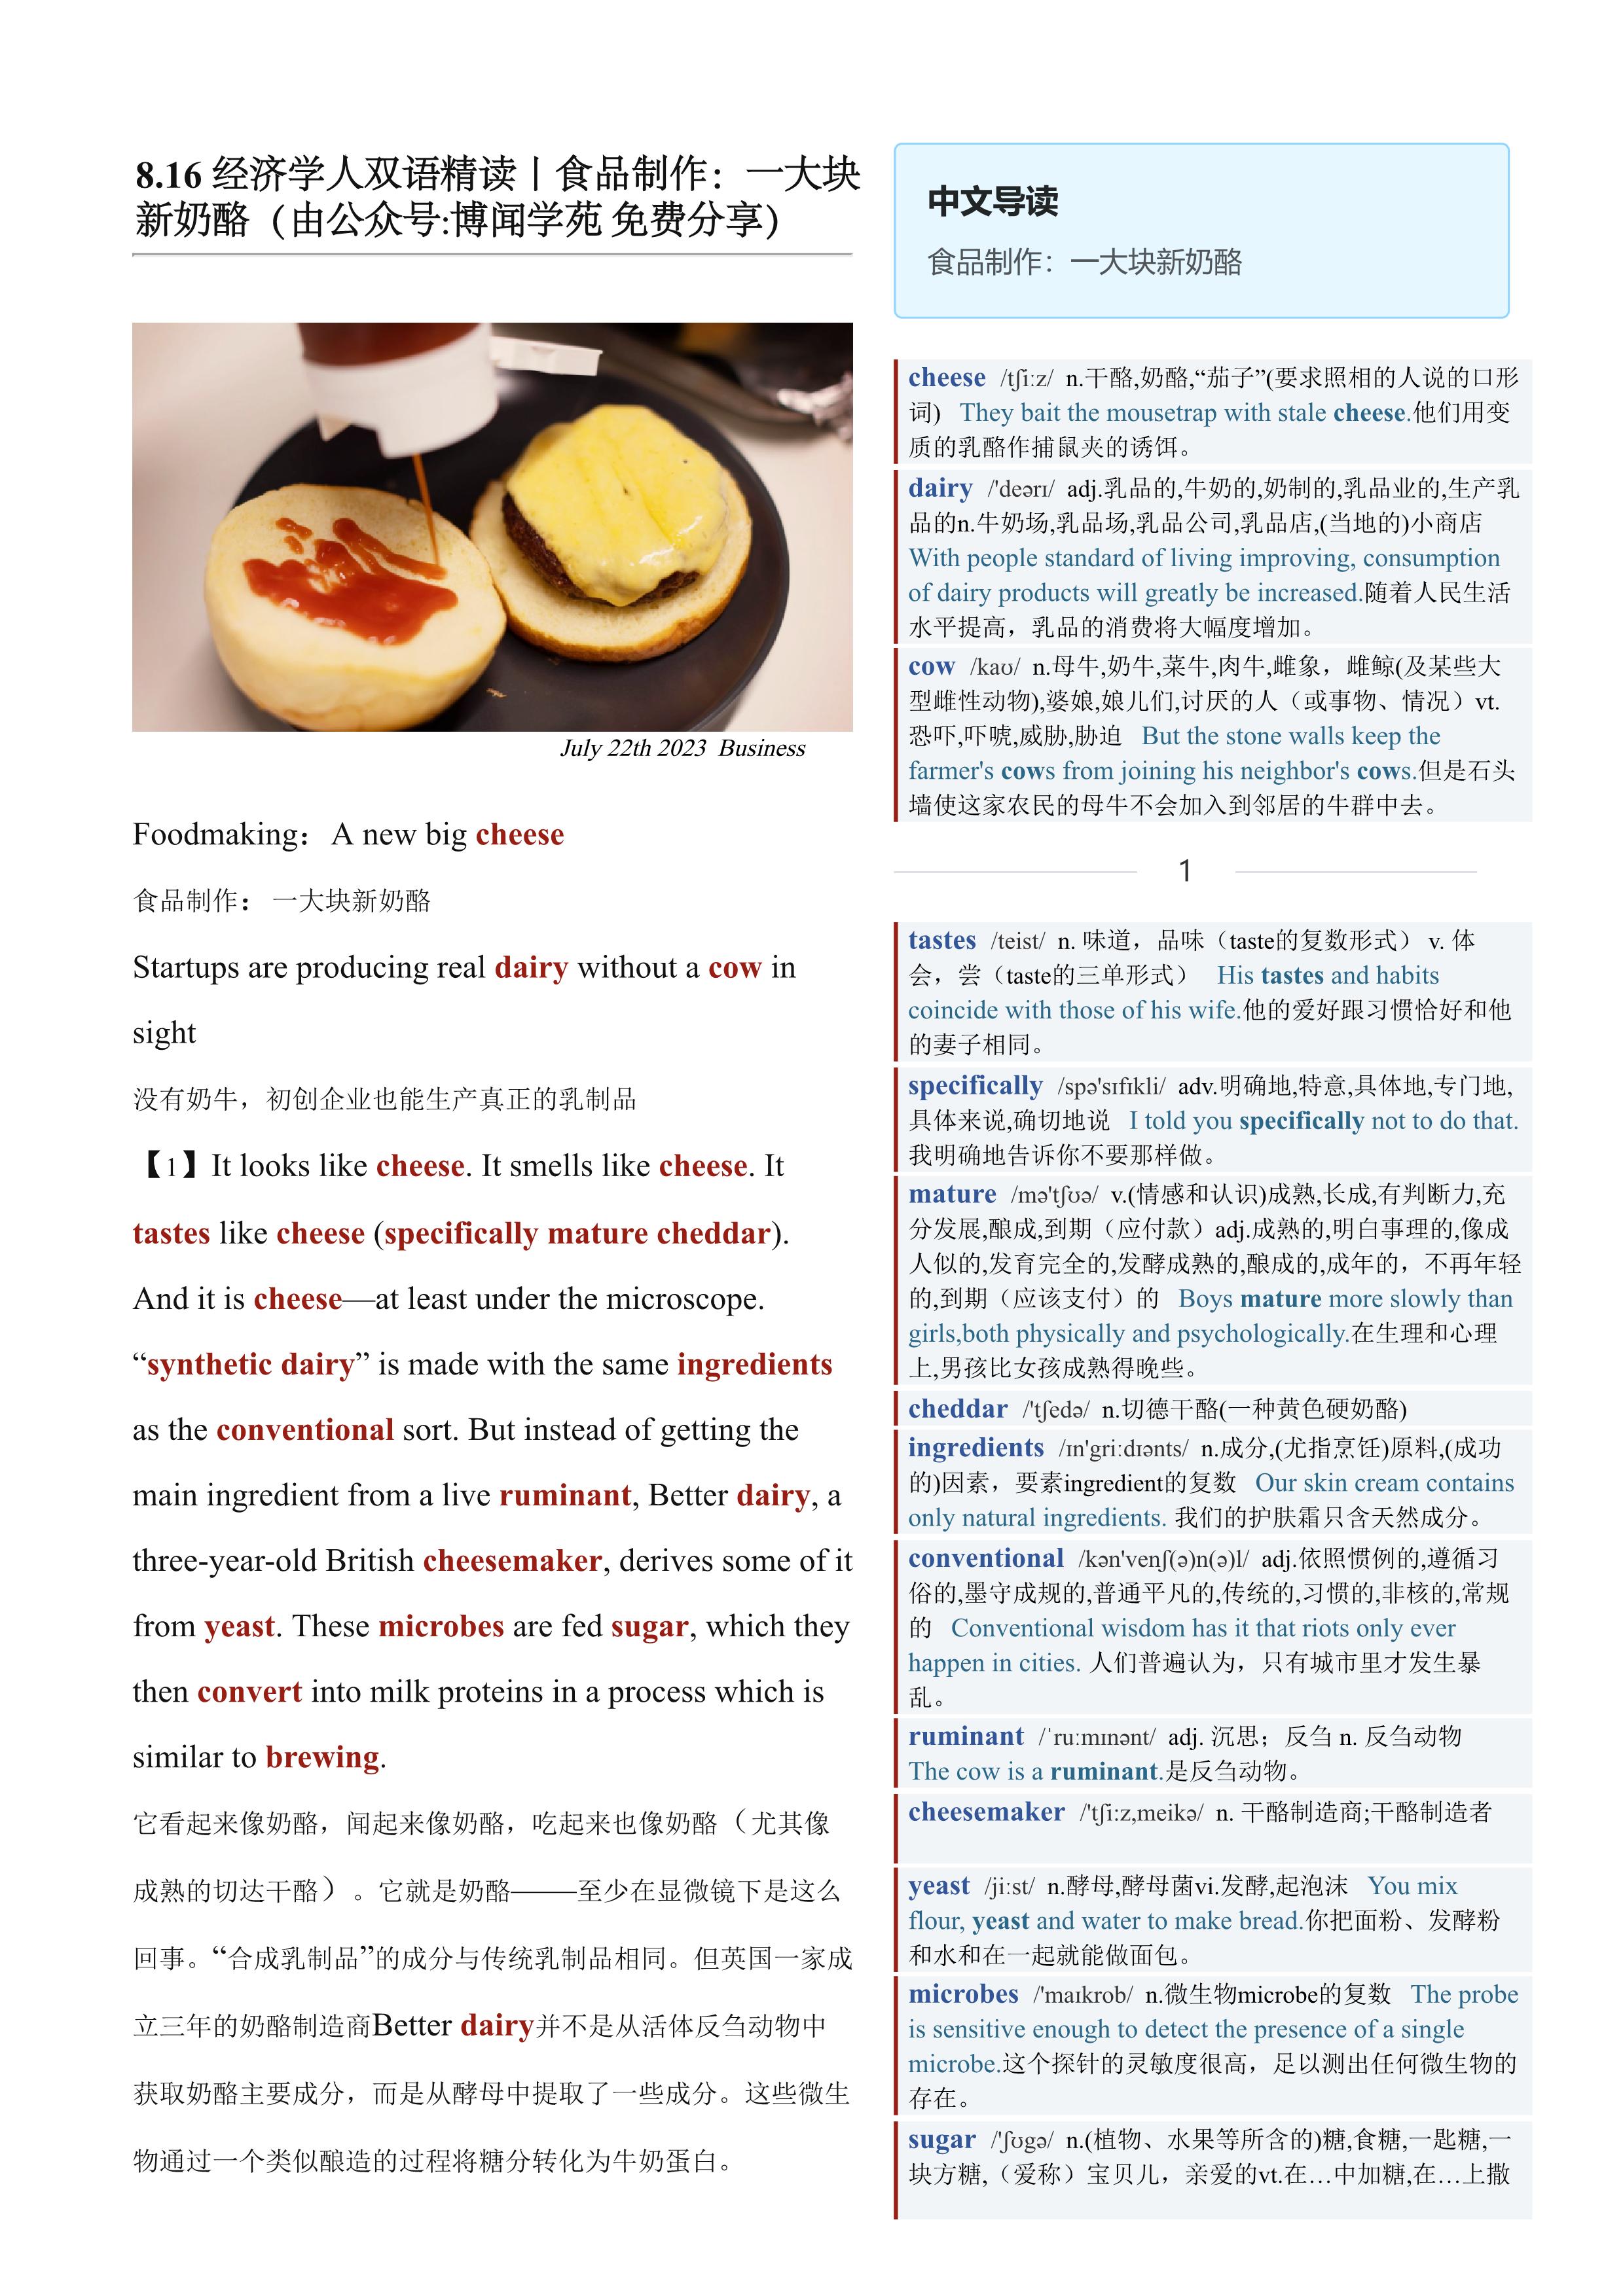 2023.08.16 经济学人双语精读丨食品制作：一大块新奶酪 (.PDF/DOC/MP3)